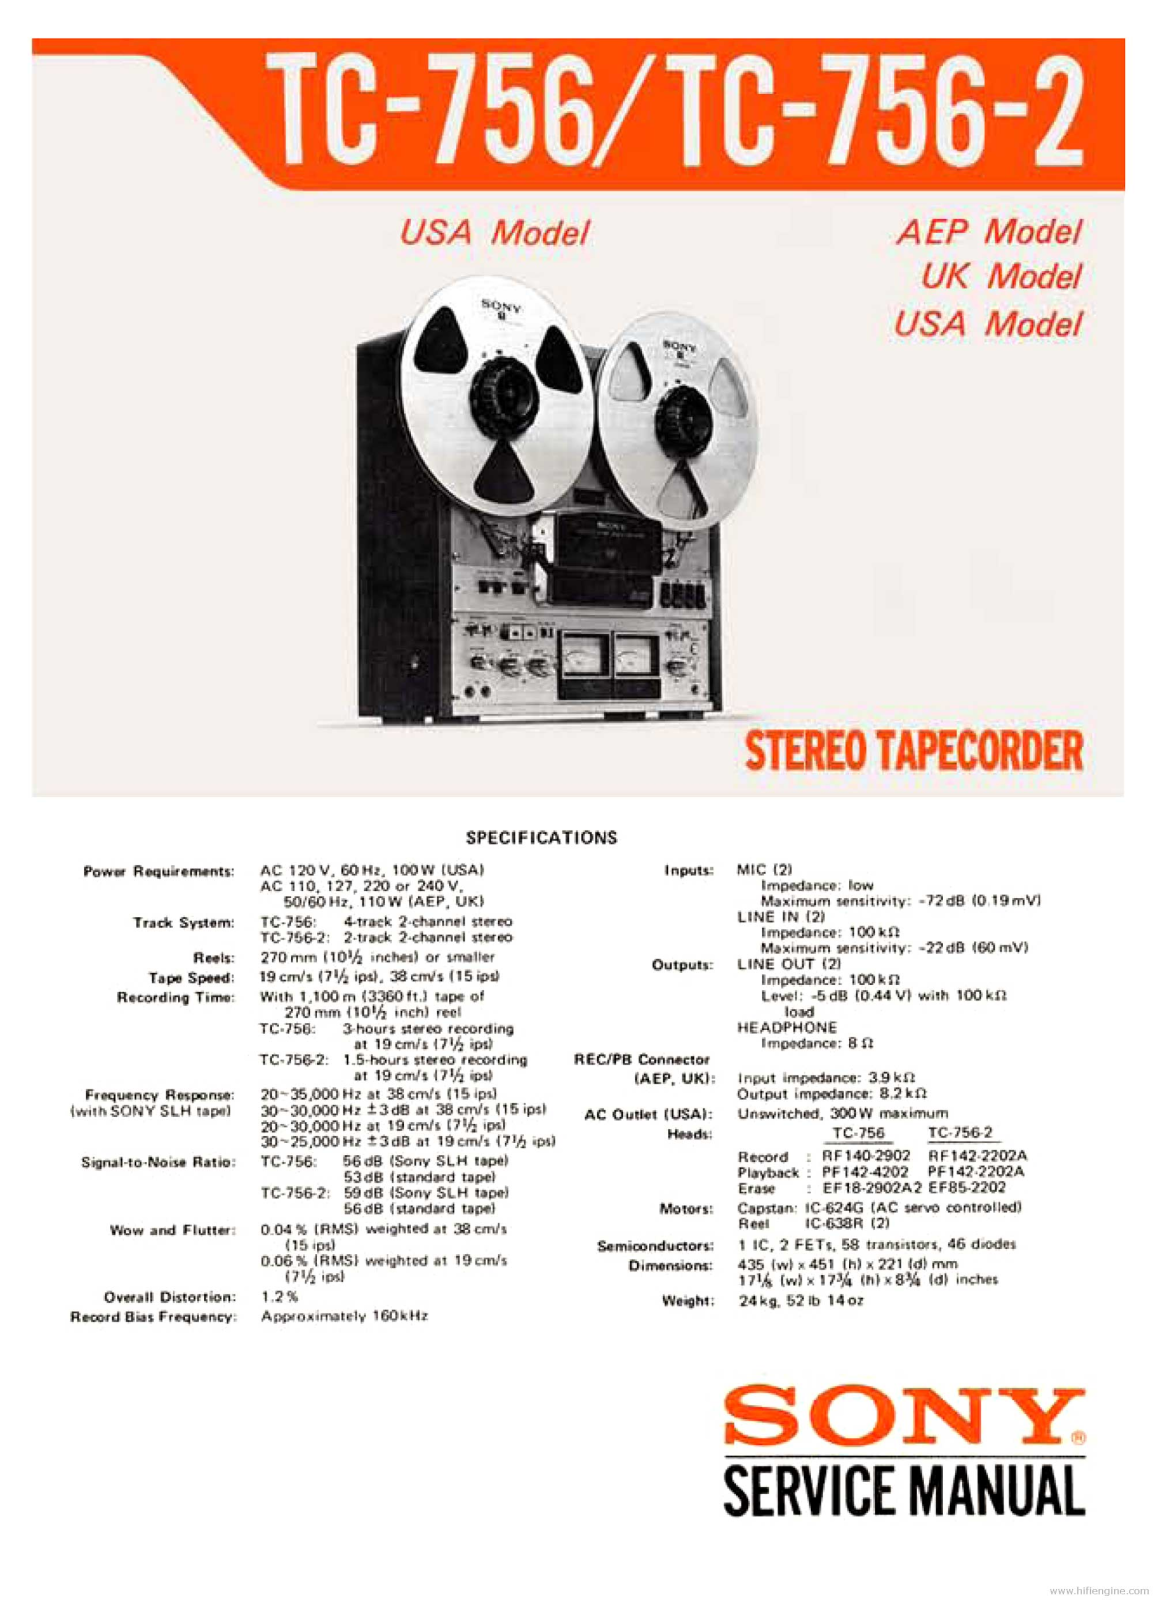 Sony TC-756, TC-756-2 Service Manual